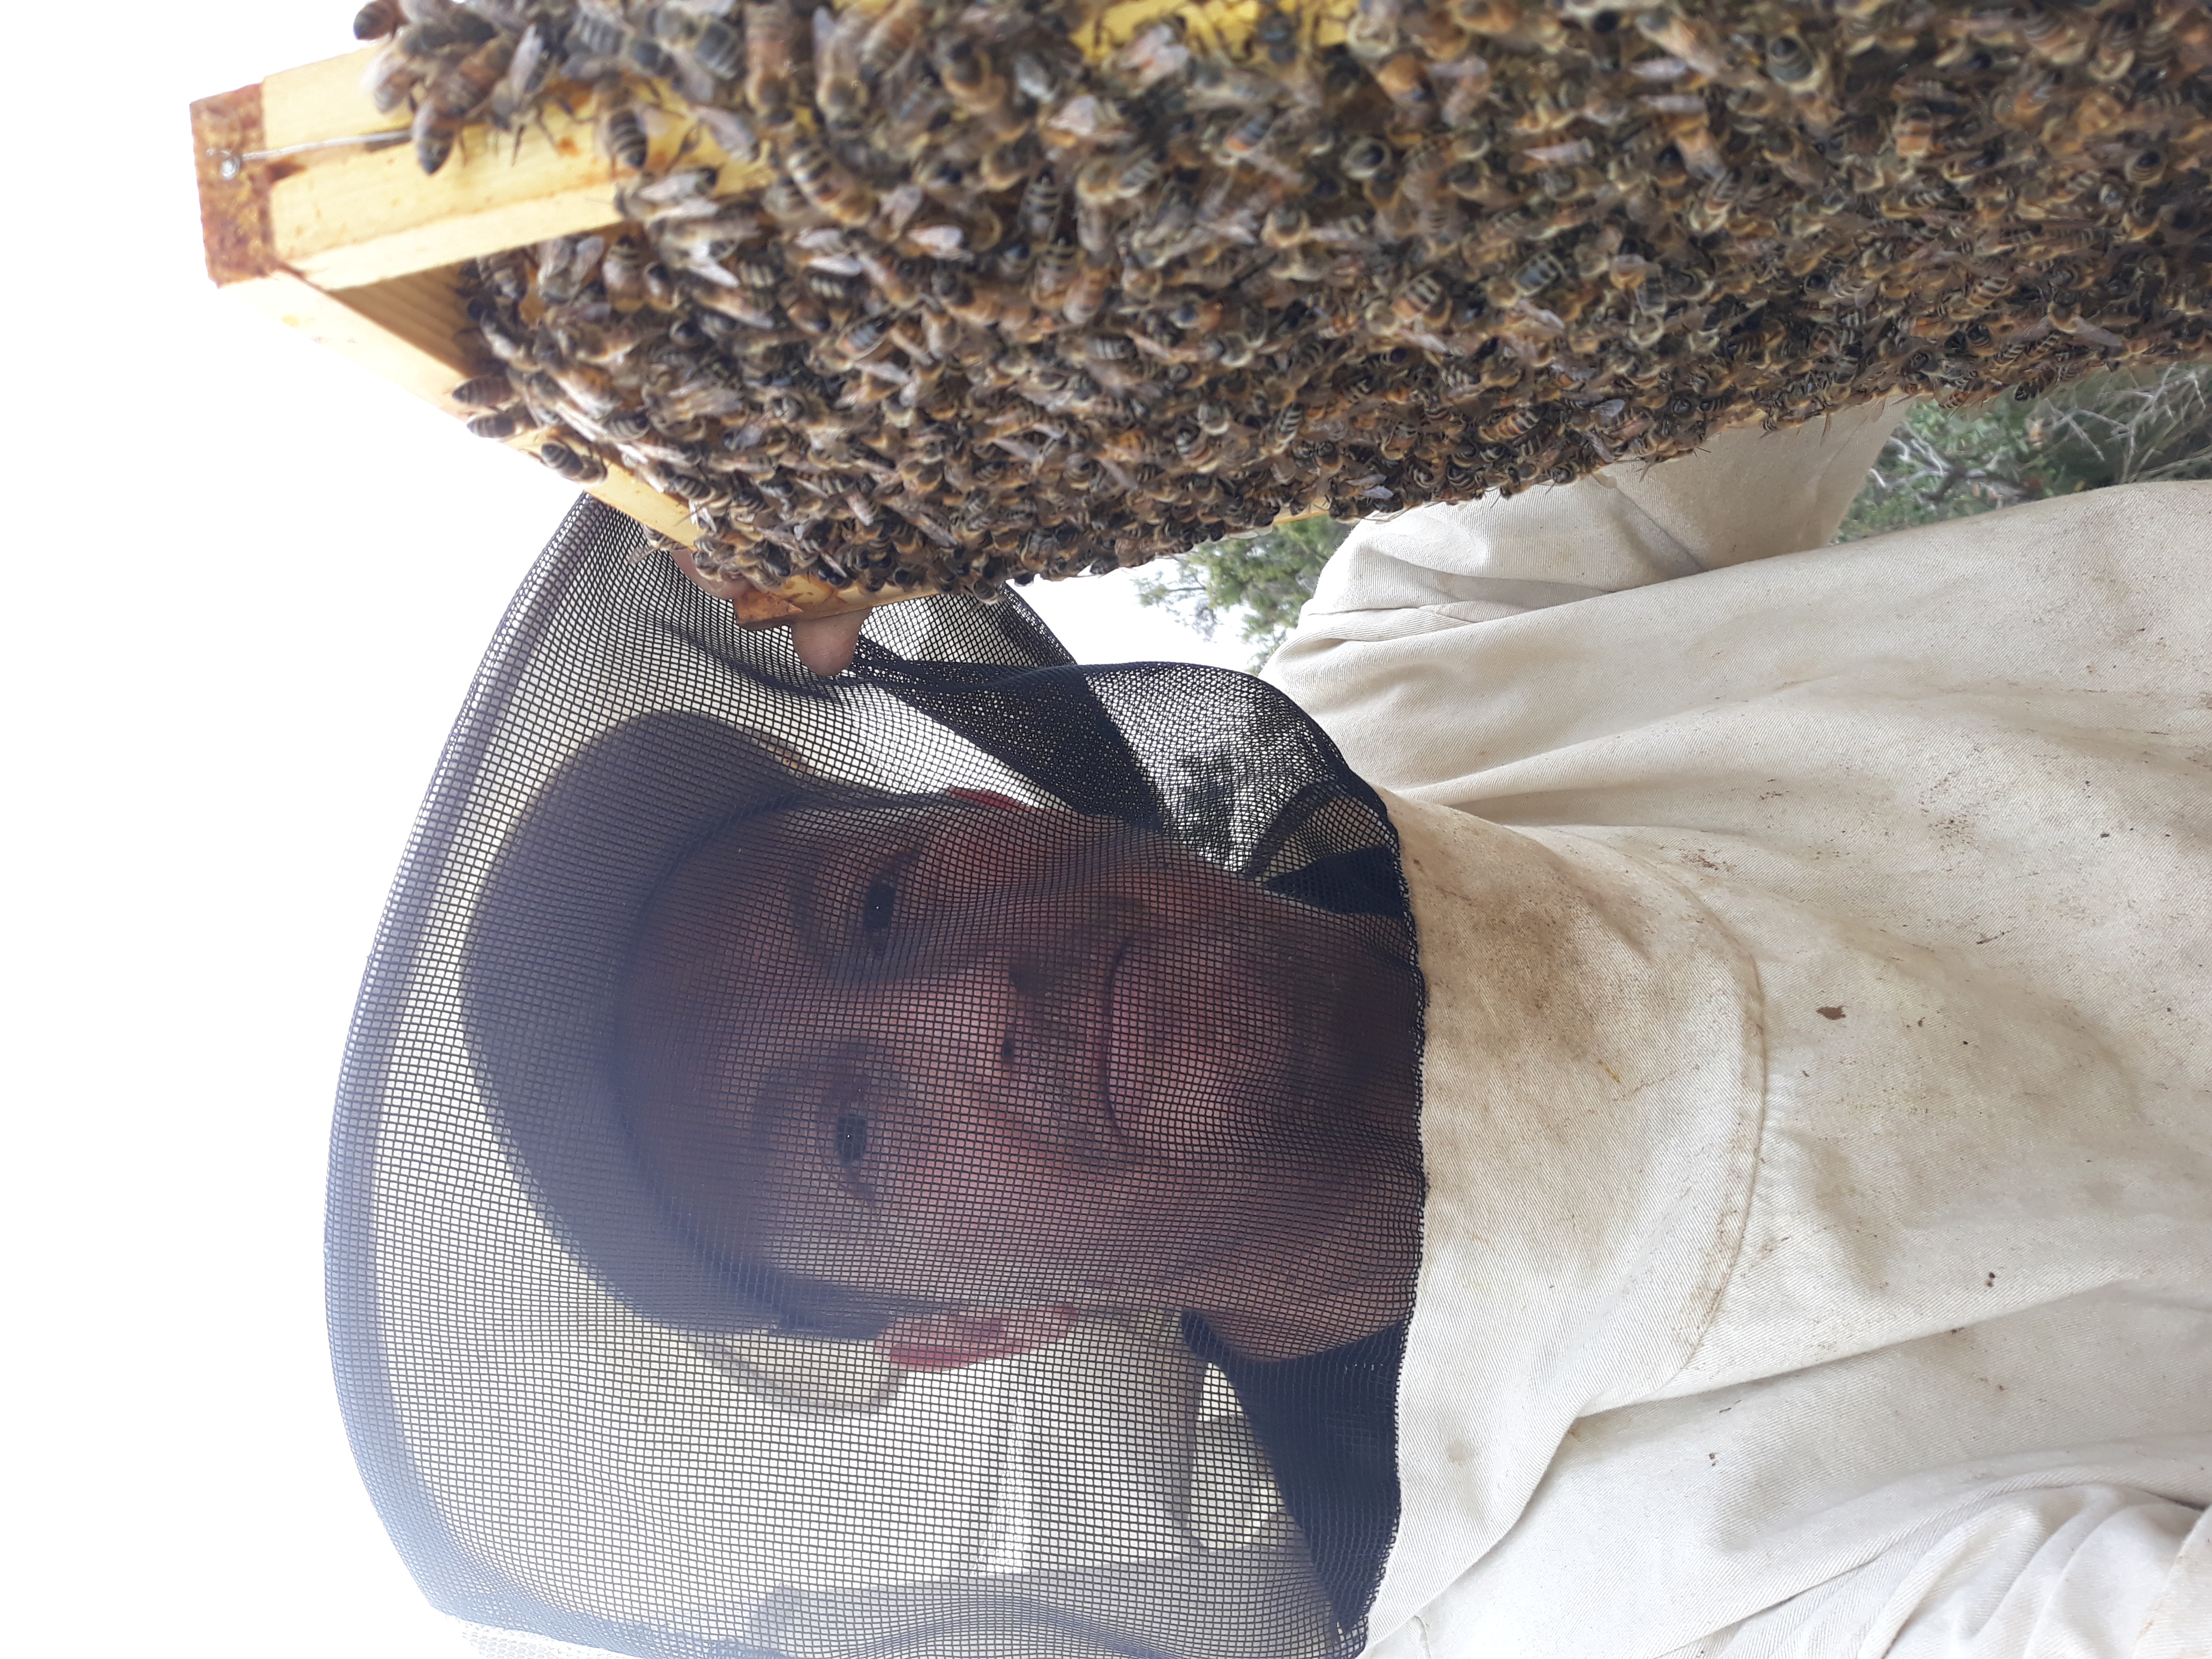  Qu elles sont douces nos abeilles 